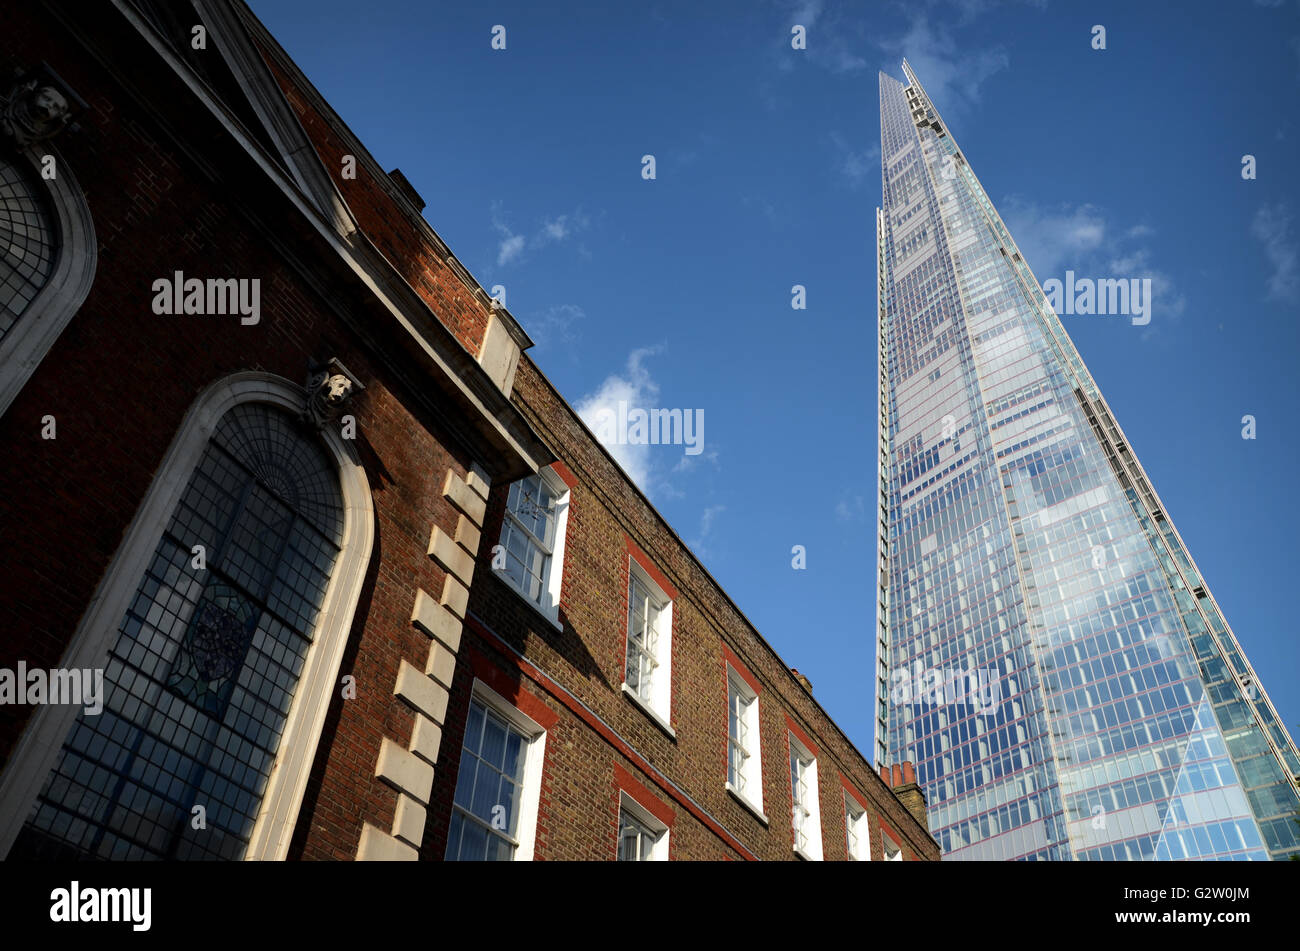 Contraste entre l'ancienne et la nouvelle architecture à Londres, avec le majestueux Shard placée à côté d'un charmant bâtiment en briques anciennes. Banque D'Images